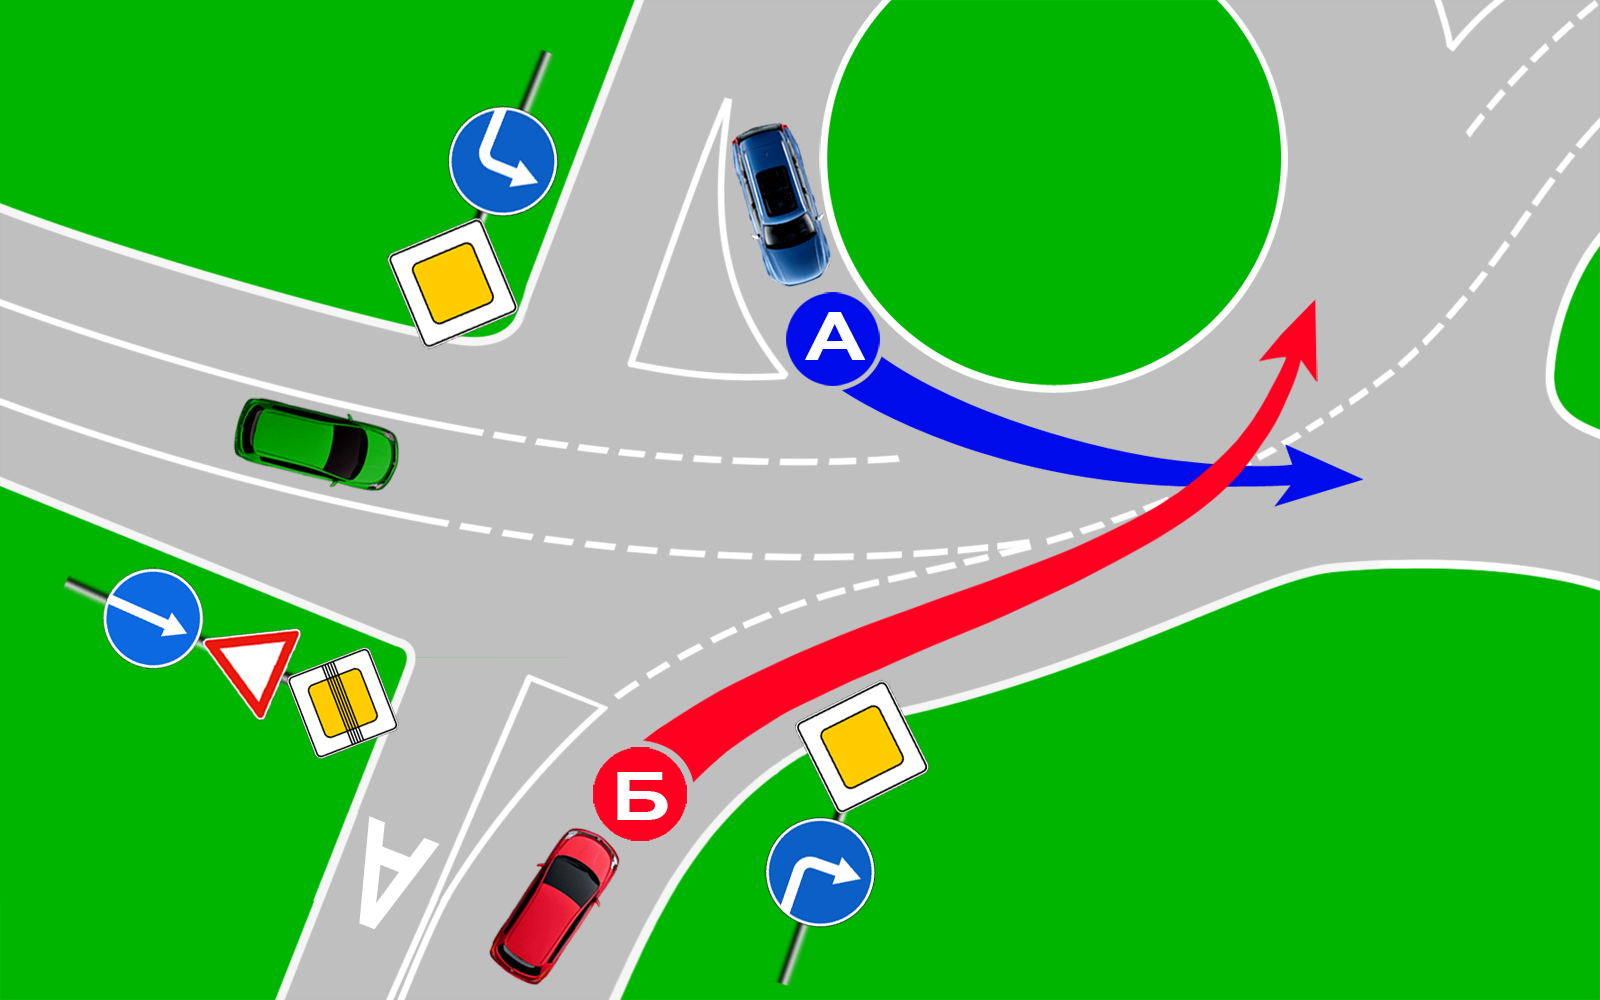 Знак дорожного движения перекресток